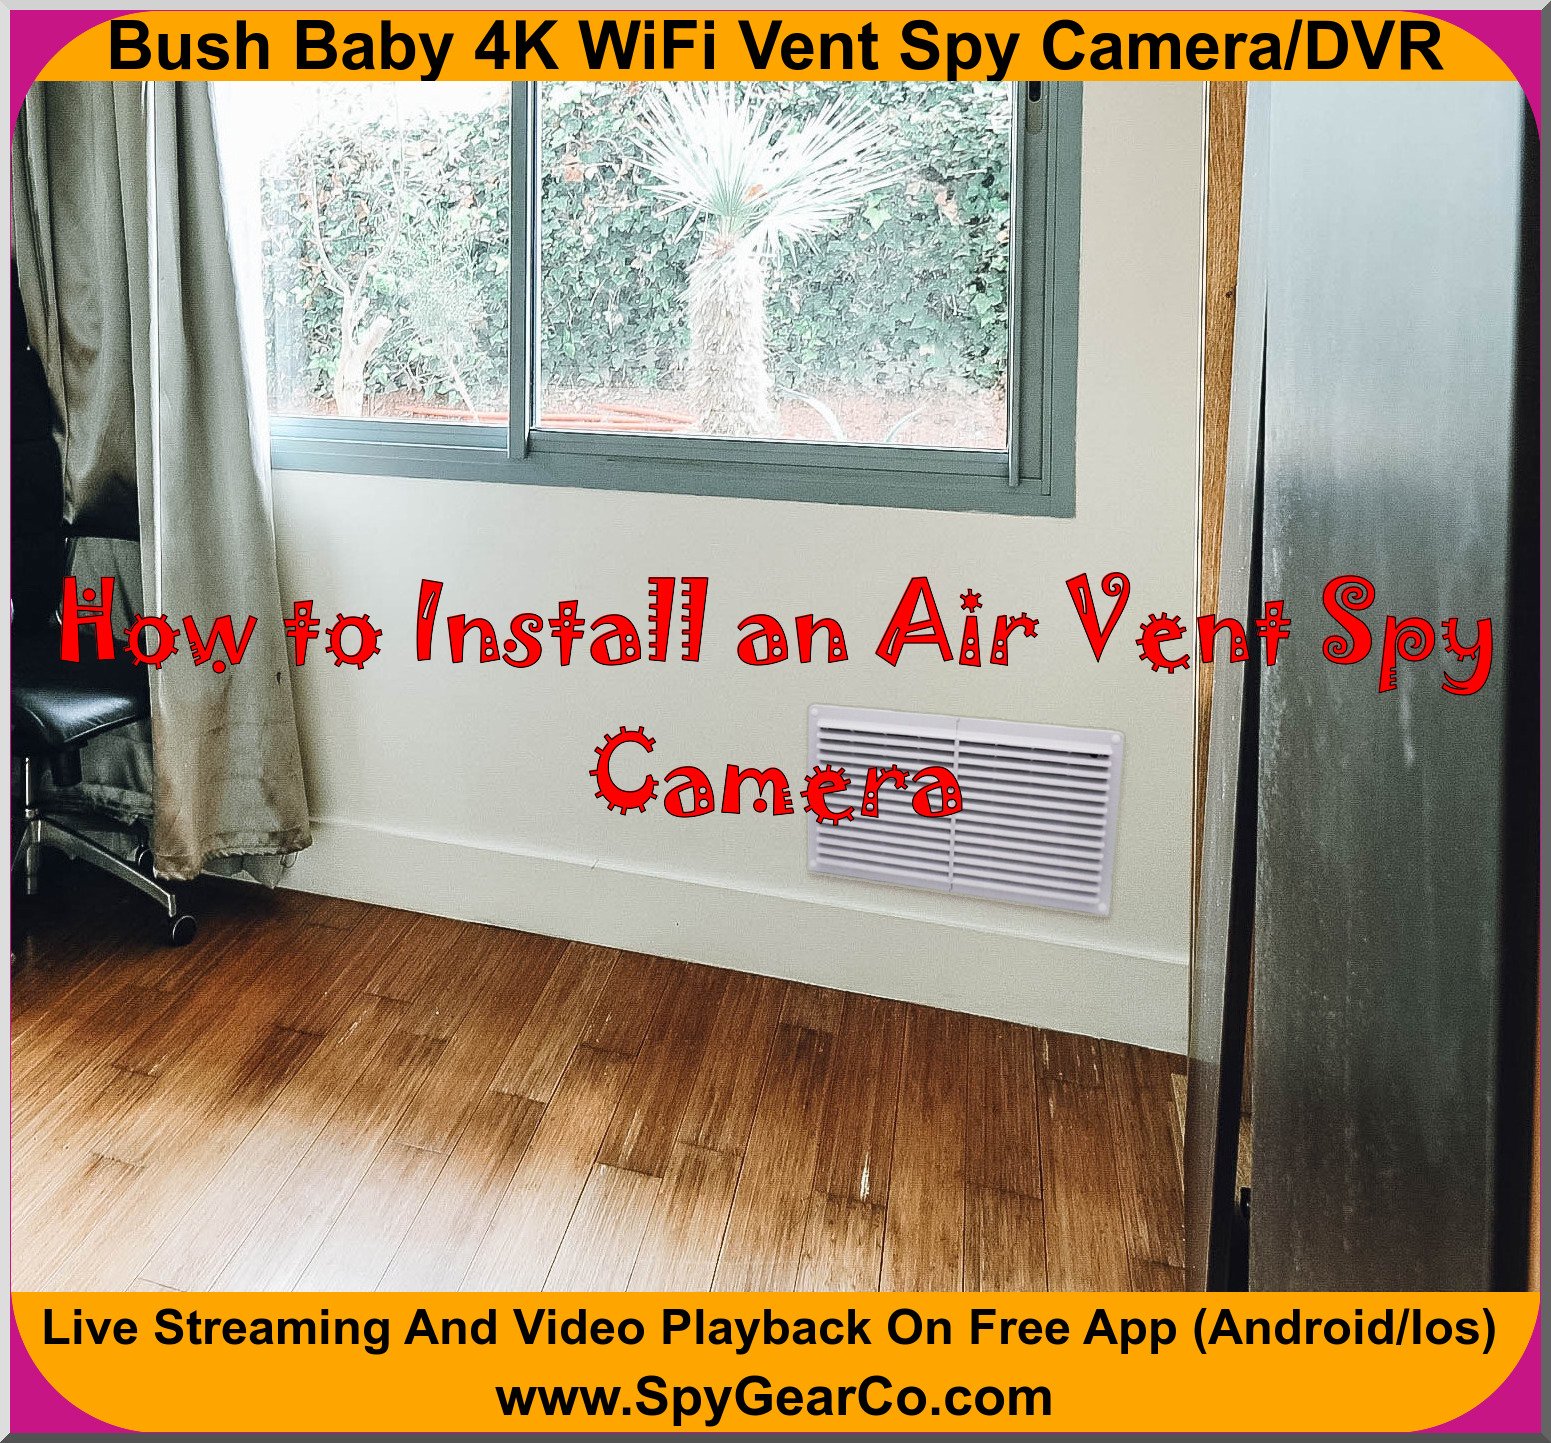 Bush Baby 4K WiFi Vent Spy Camera/DVR